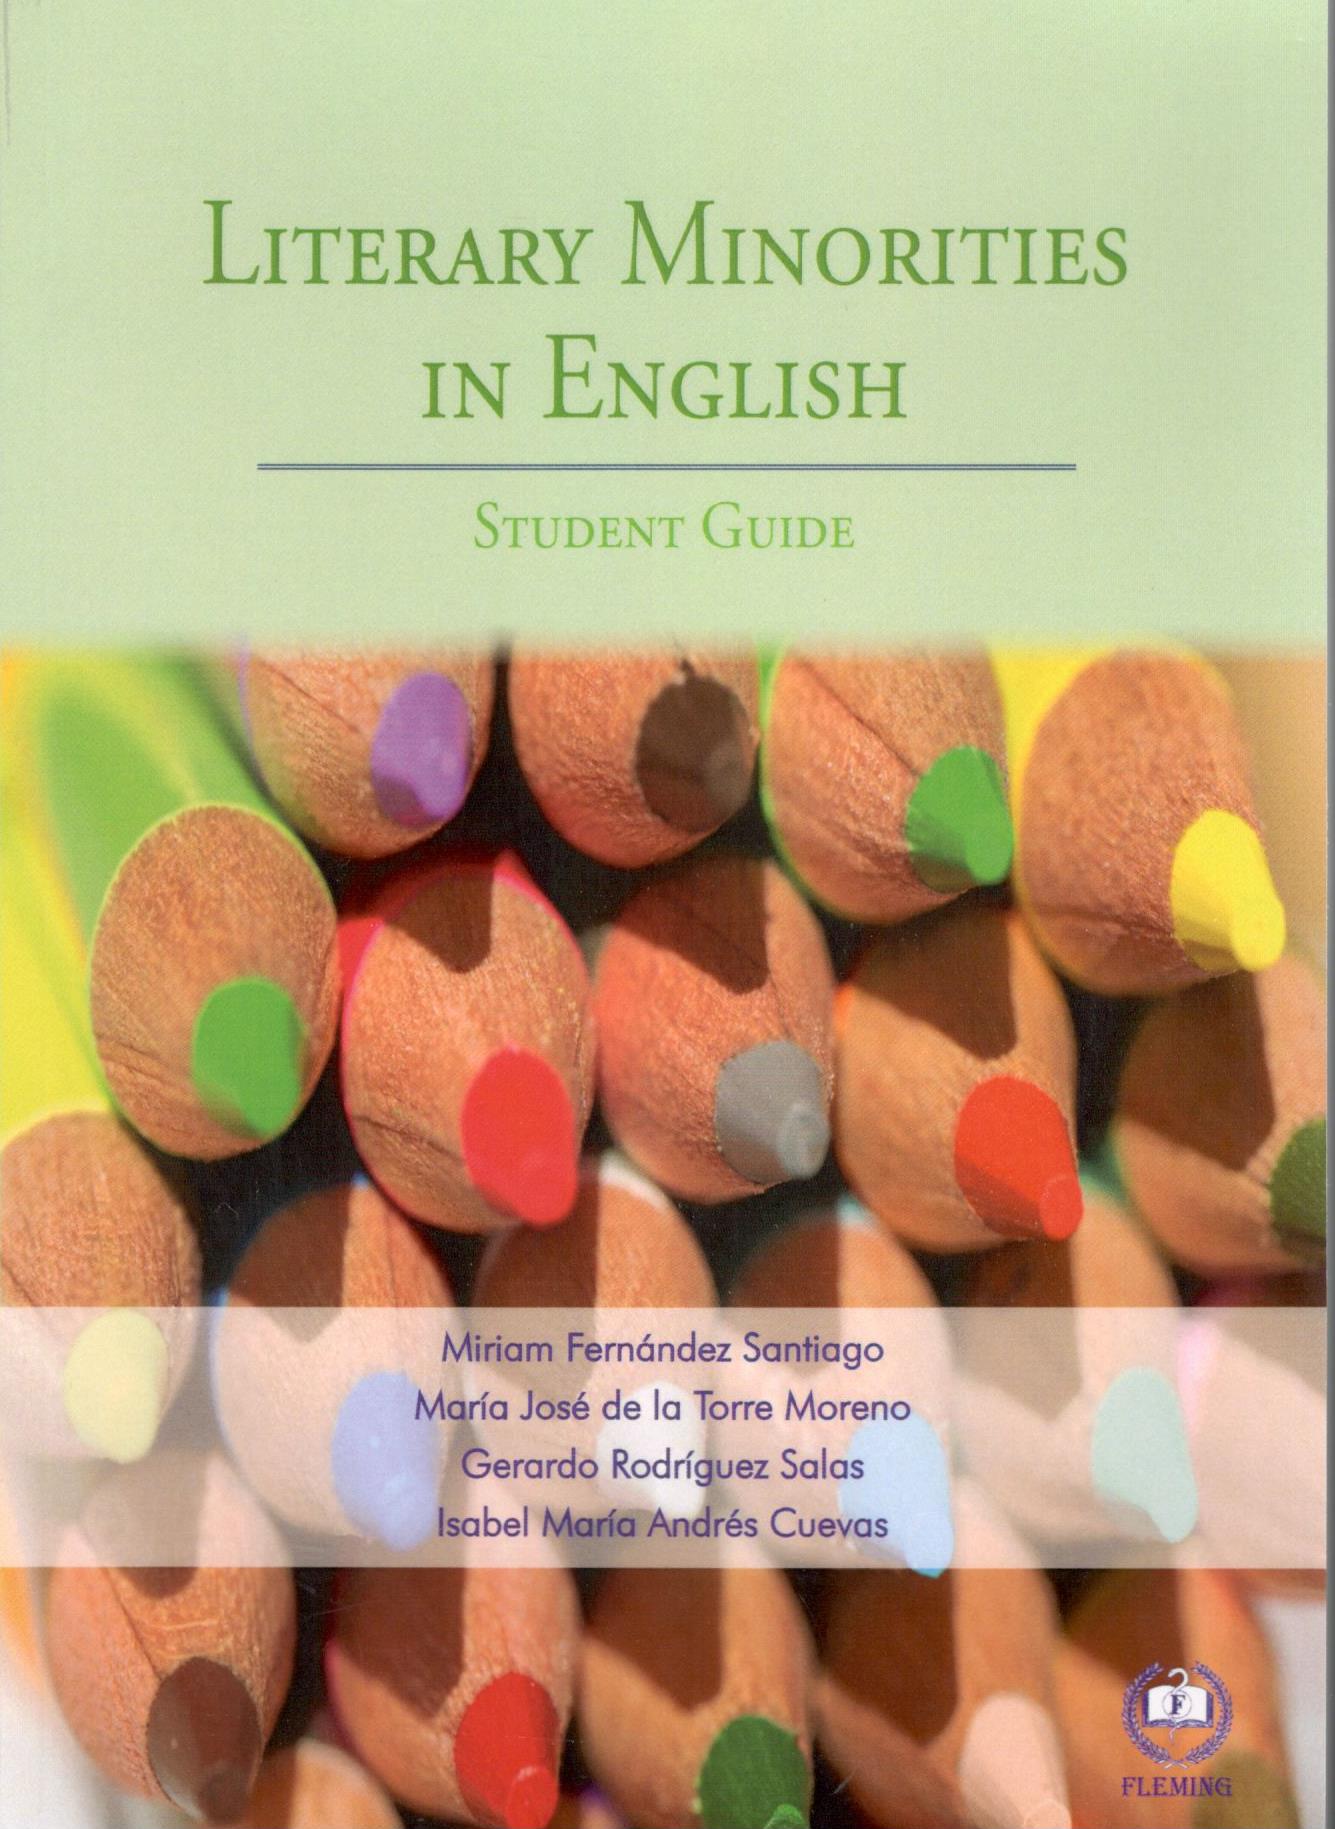 LITERARY MINORITIES IN ENGLISH